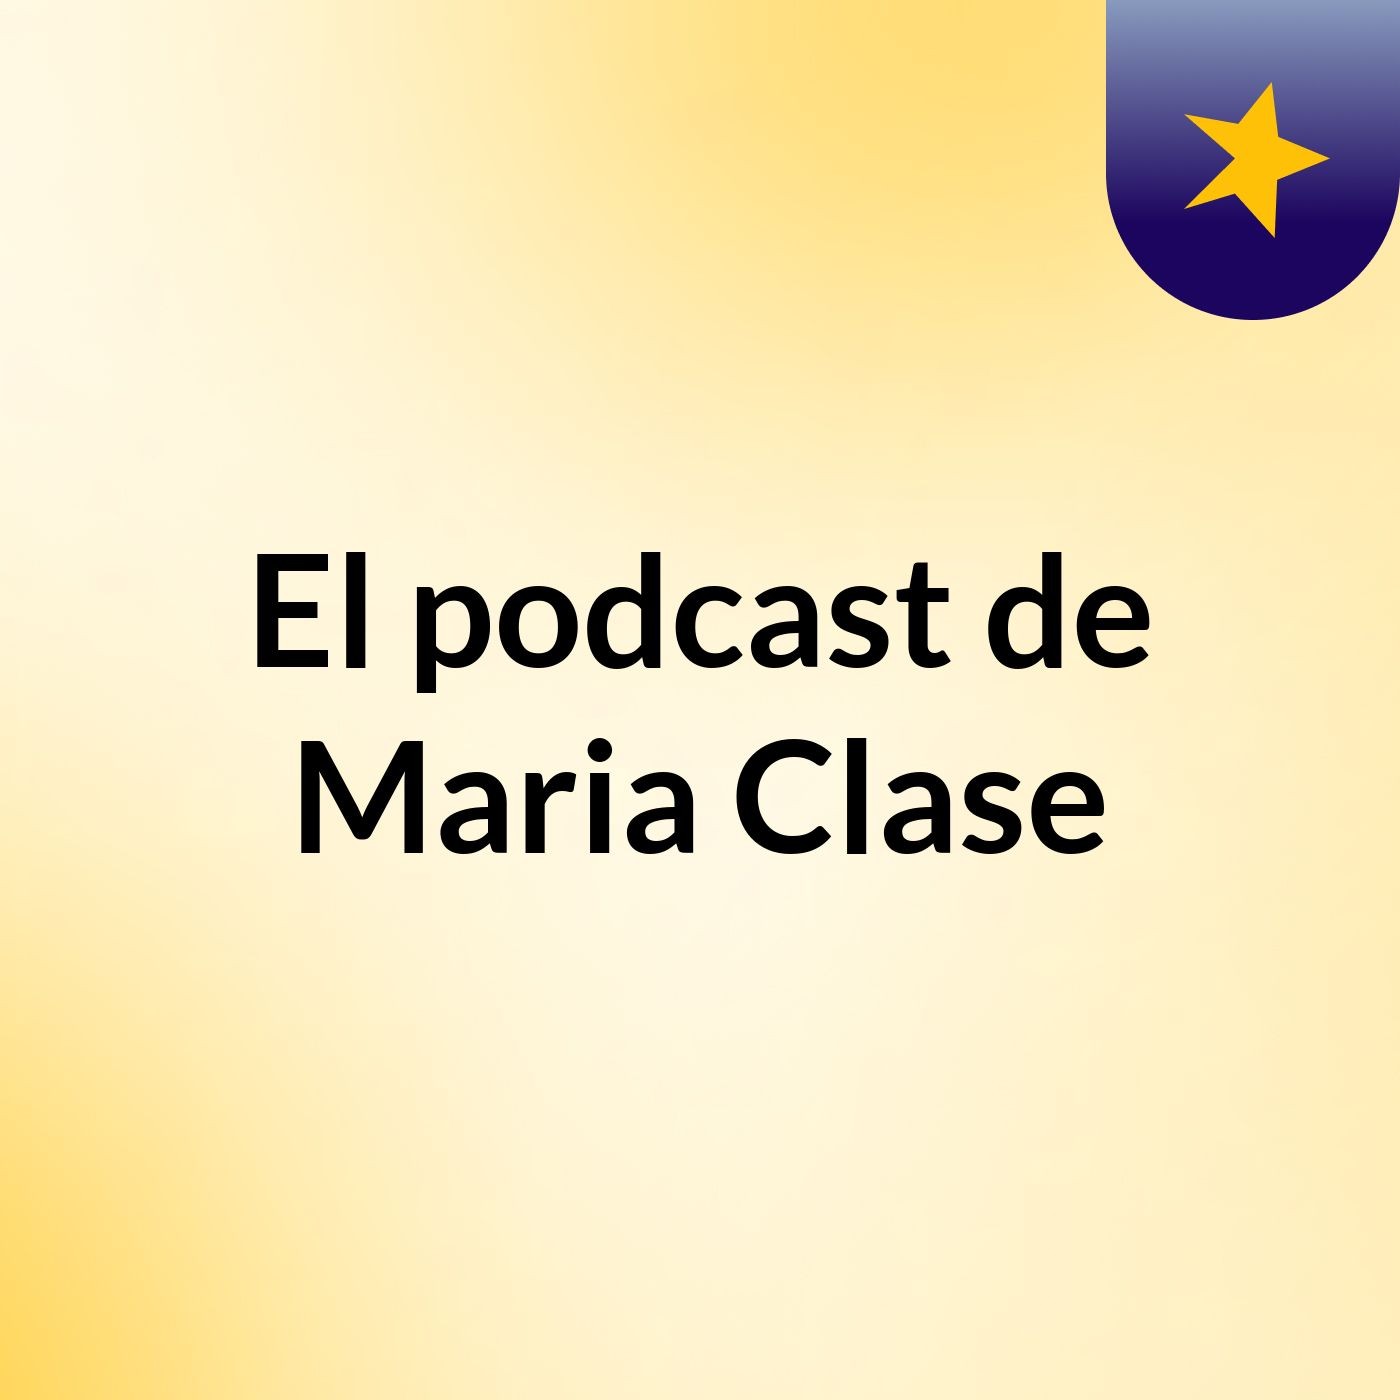 El podcast de Maria Clase